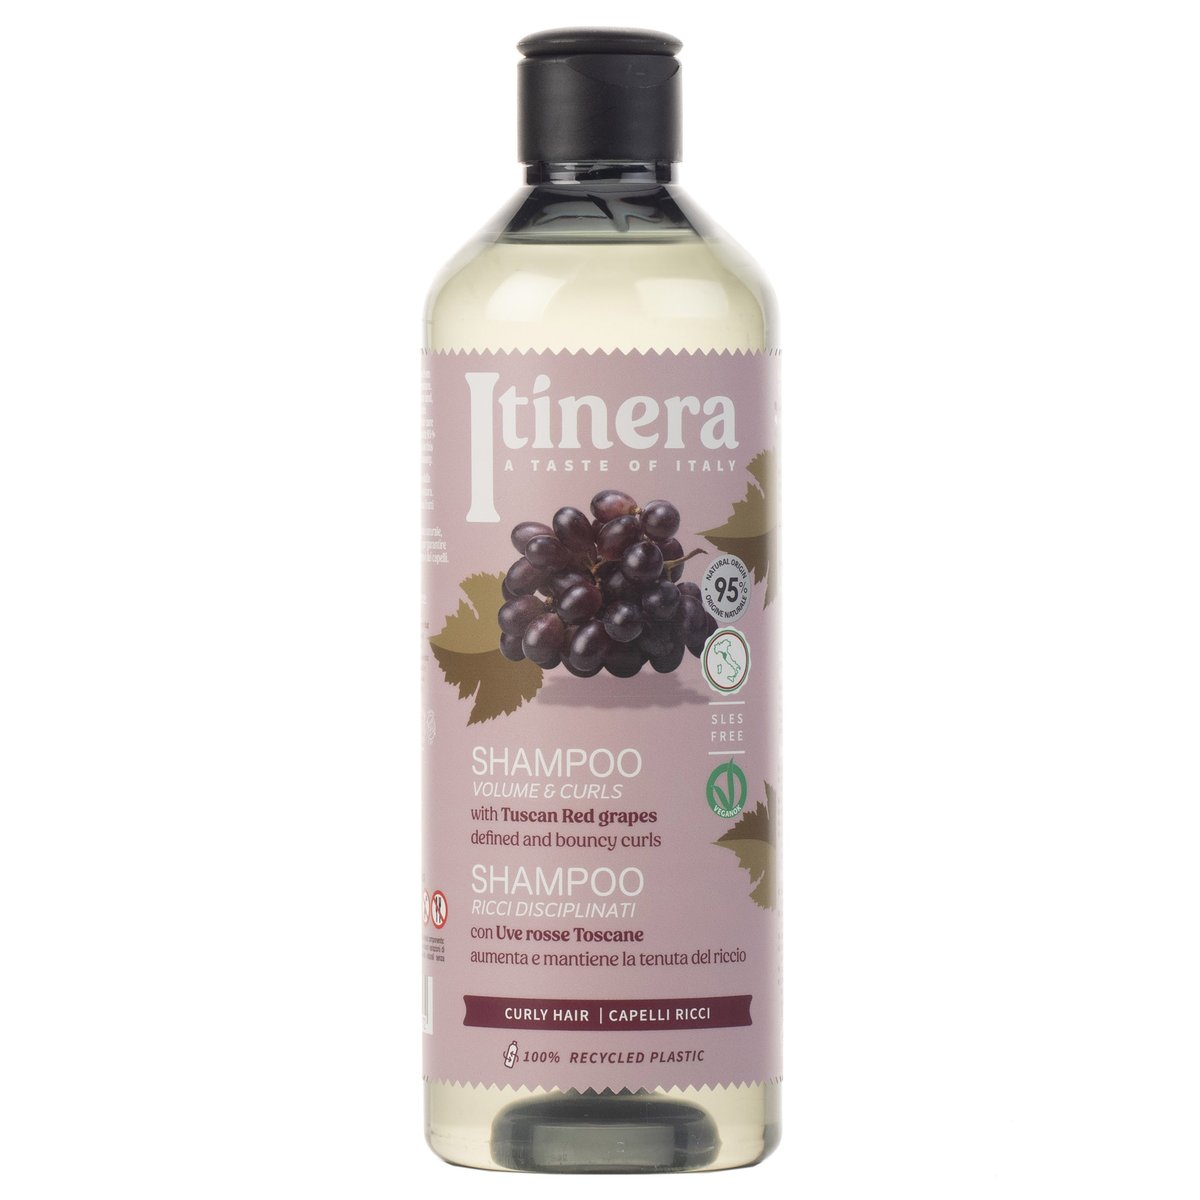 Itinera, Szampon do włosów kręconych z toskańskimi czerwonymi winogronami, 95% składników naturalnych, 4x370 ml